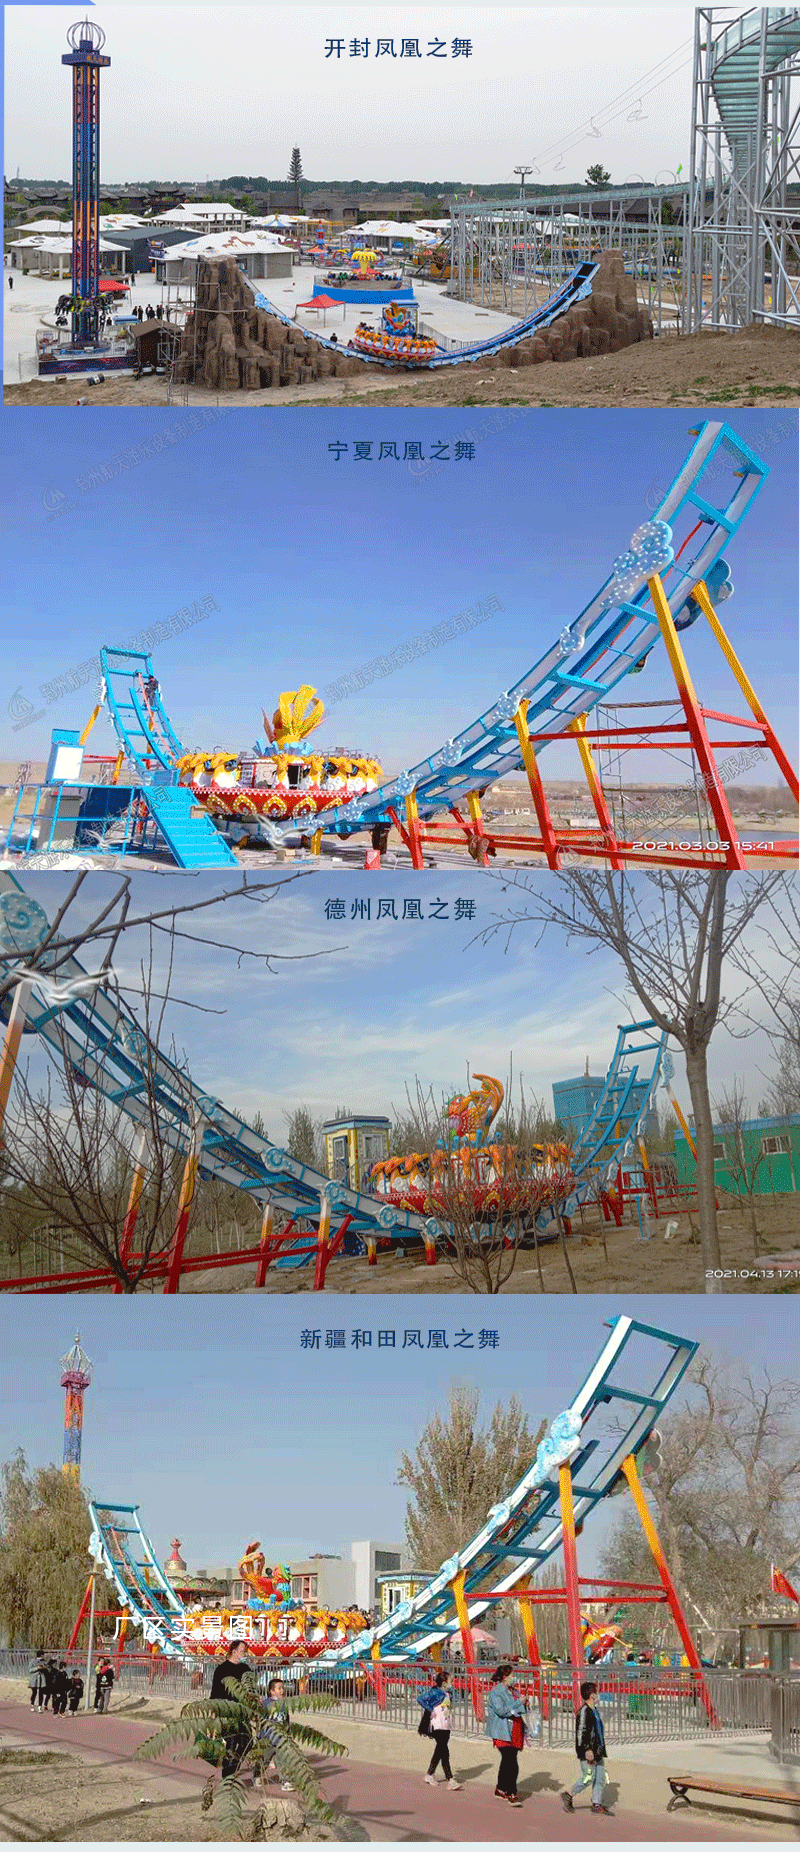 郑州大型大型轨道飞碟游乐园设备航天游乐电话 4